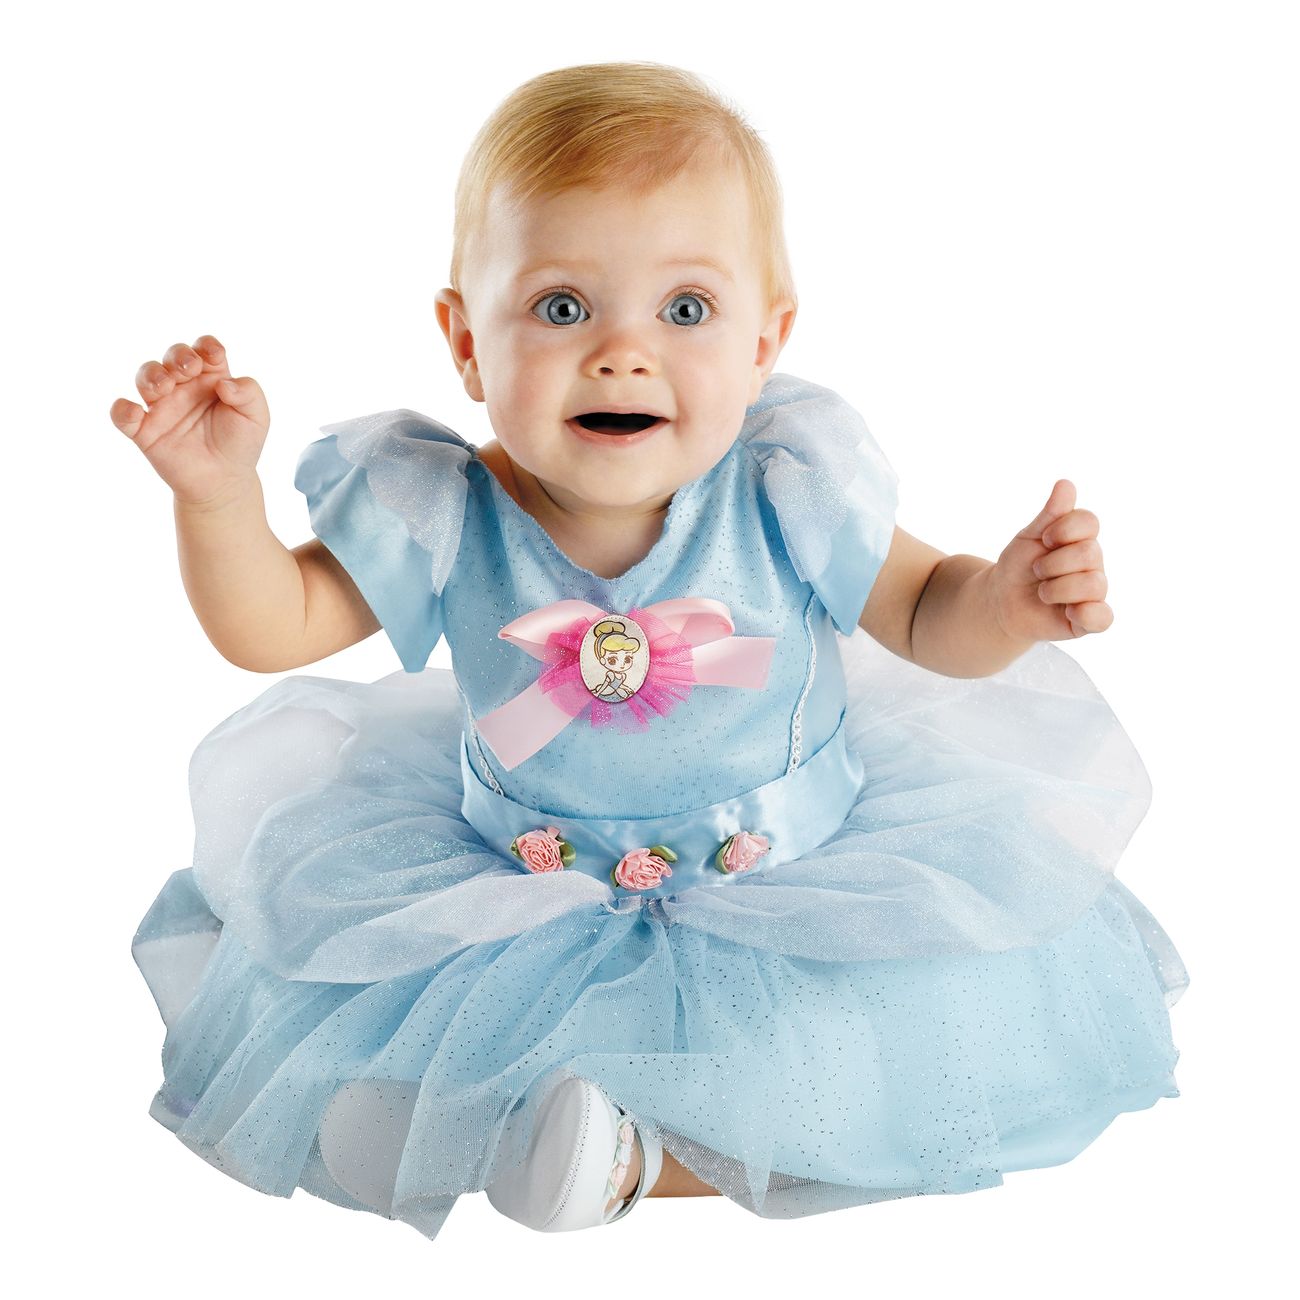 Askepot babykostume - Askepot kostume til børn